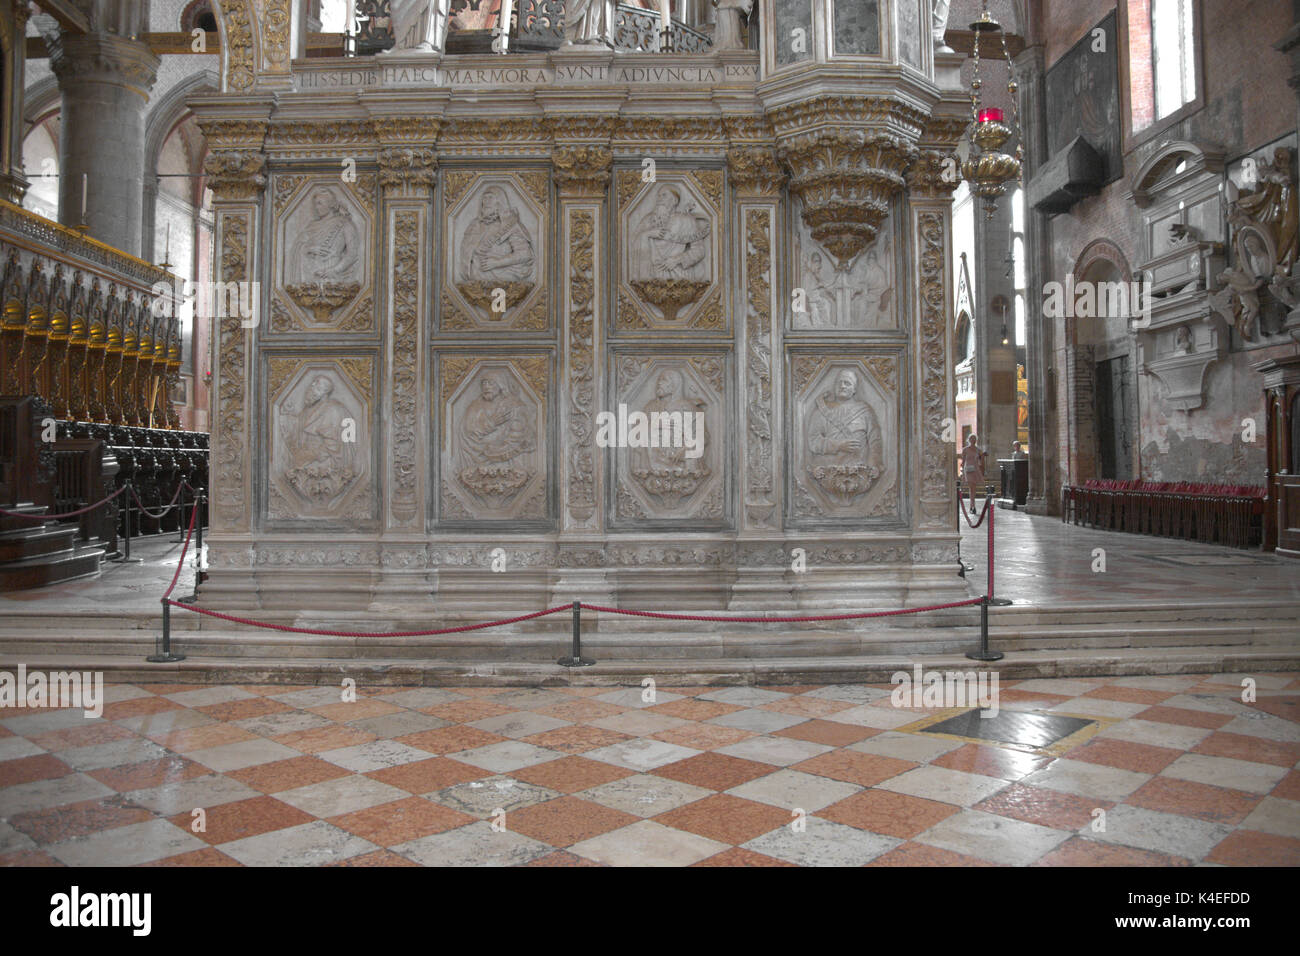 Venezia Veneto Italia. La Basilica di Santa Maria Gloriosa dei Frari, fregi sul coro entrata. Foto Stock